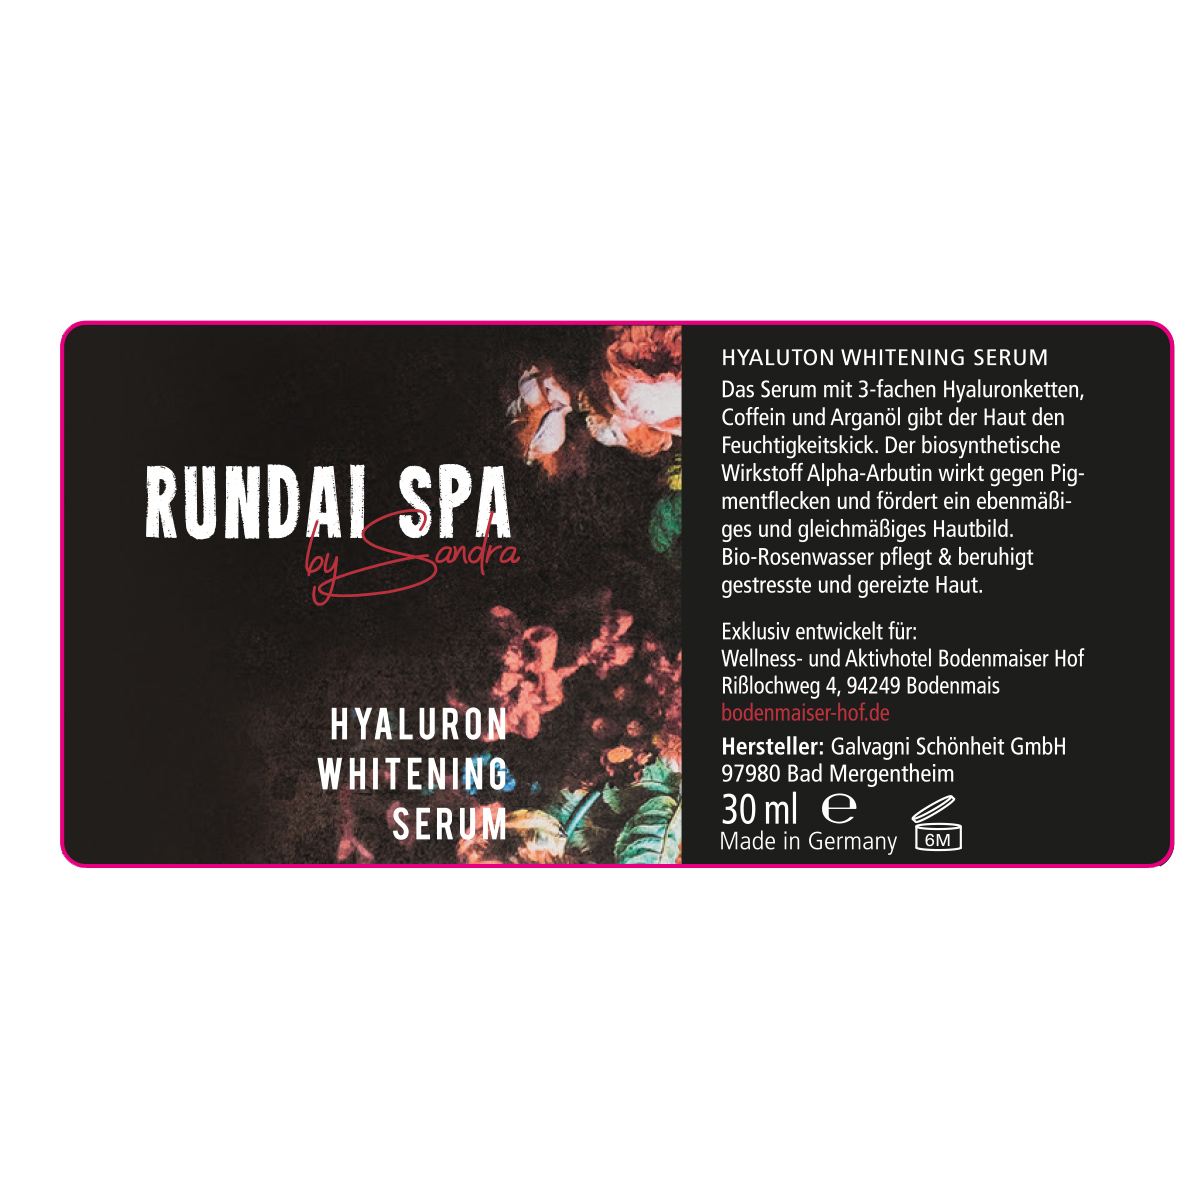 RUNDAI SPA – Hyaluron Whitening Serum